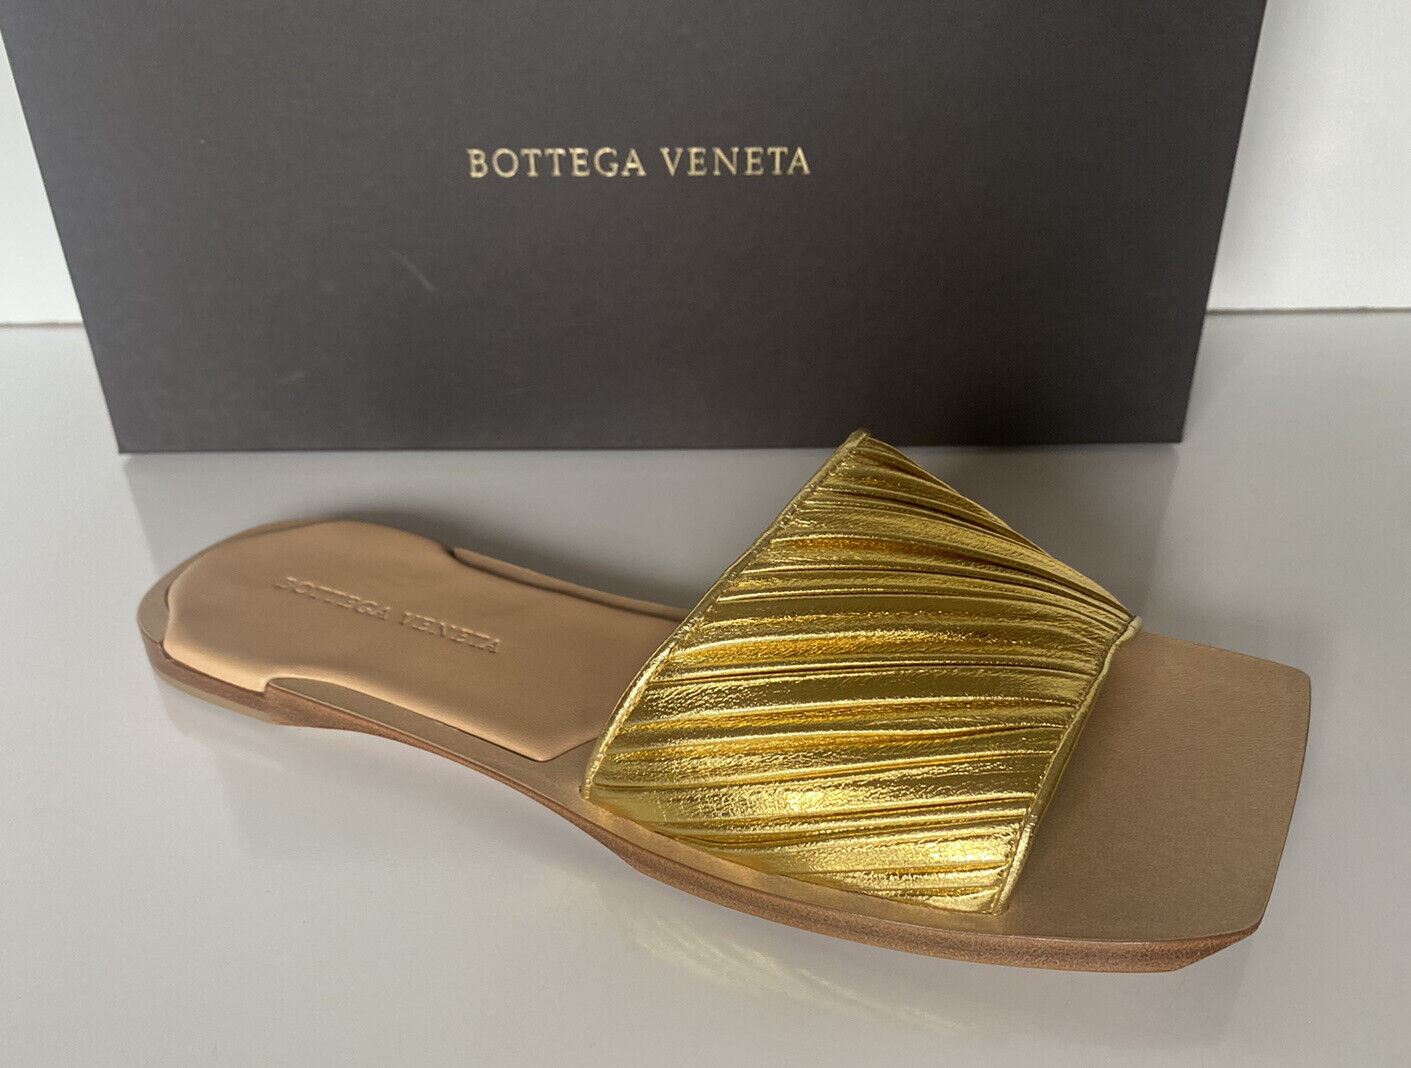 NIB 620 $ Bottega Veneta Damen-Slip-on-Ledersandalen in Gold 8,5 US 38,5 578409 